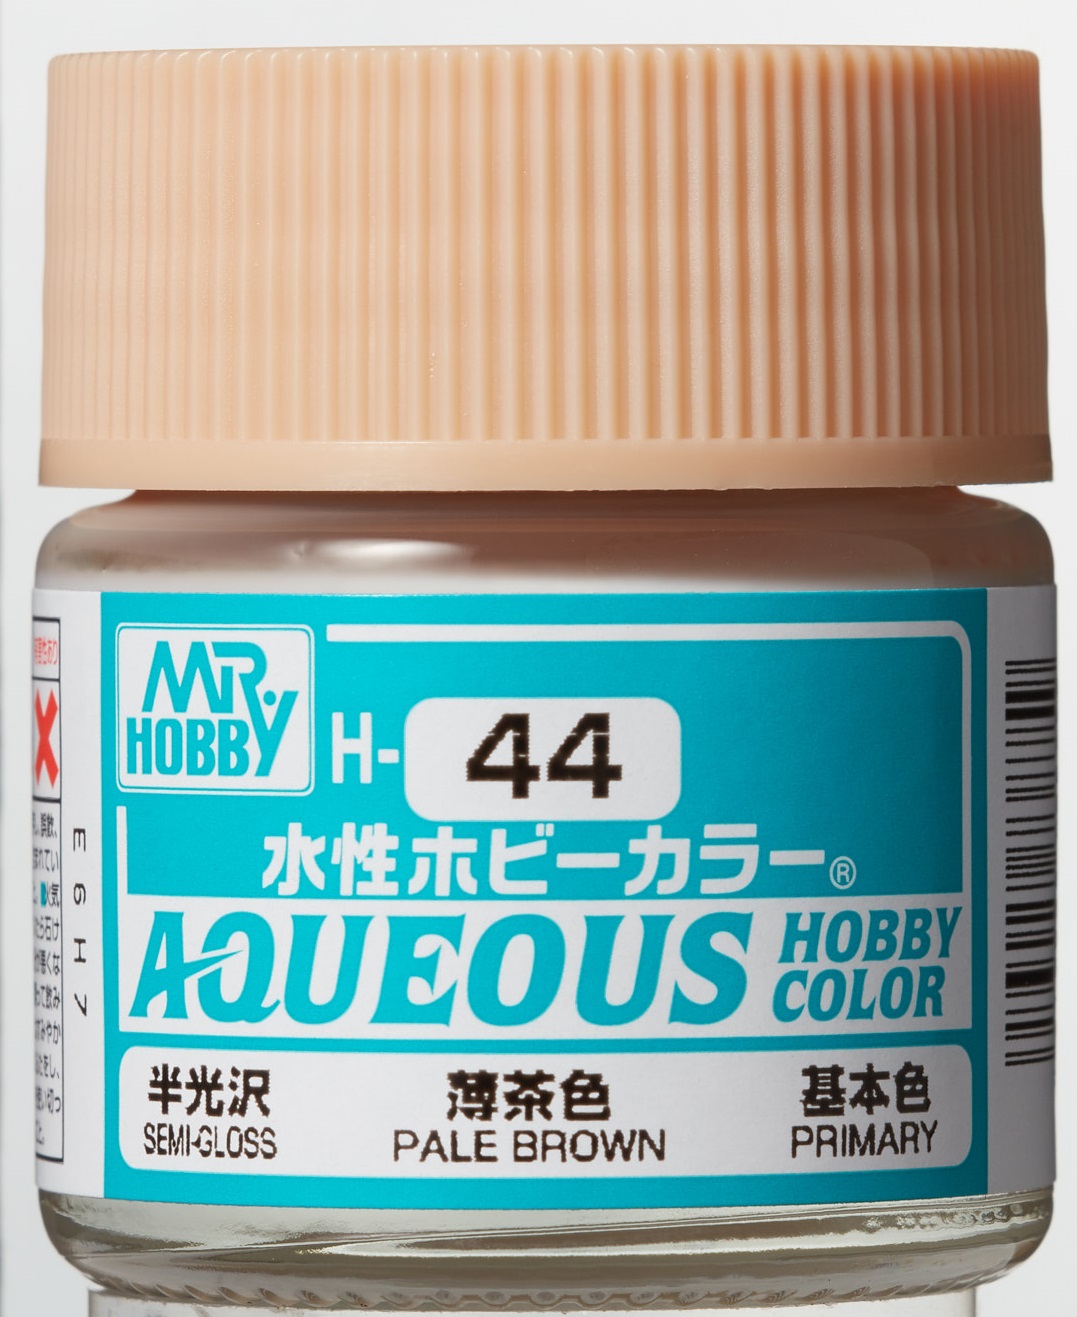 Mr. Aqueous Hobby Color - Pale Brown - H44 - Blassbraun /Hautfarbe